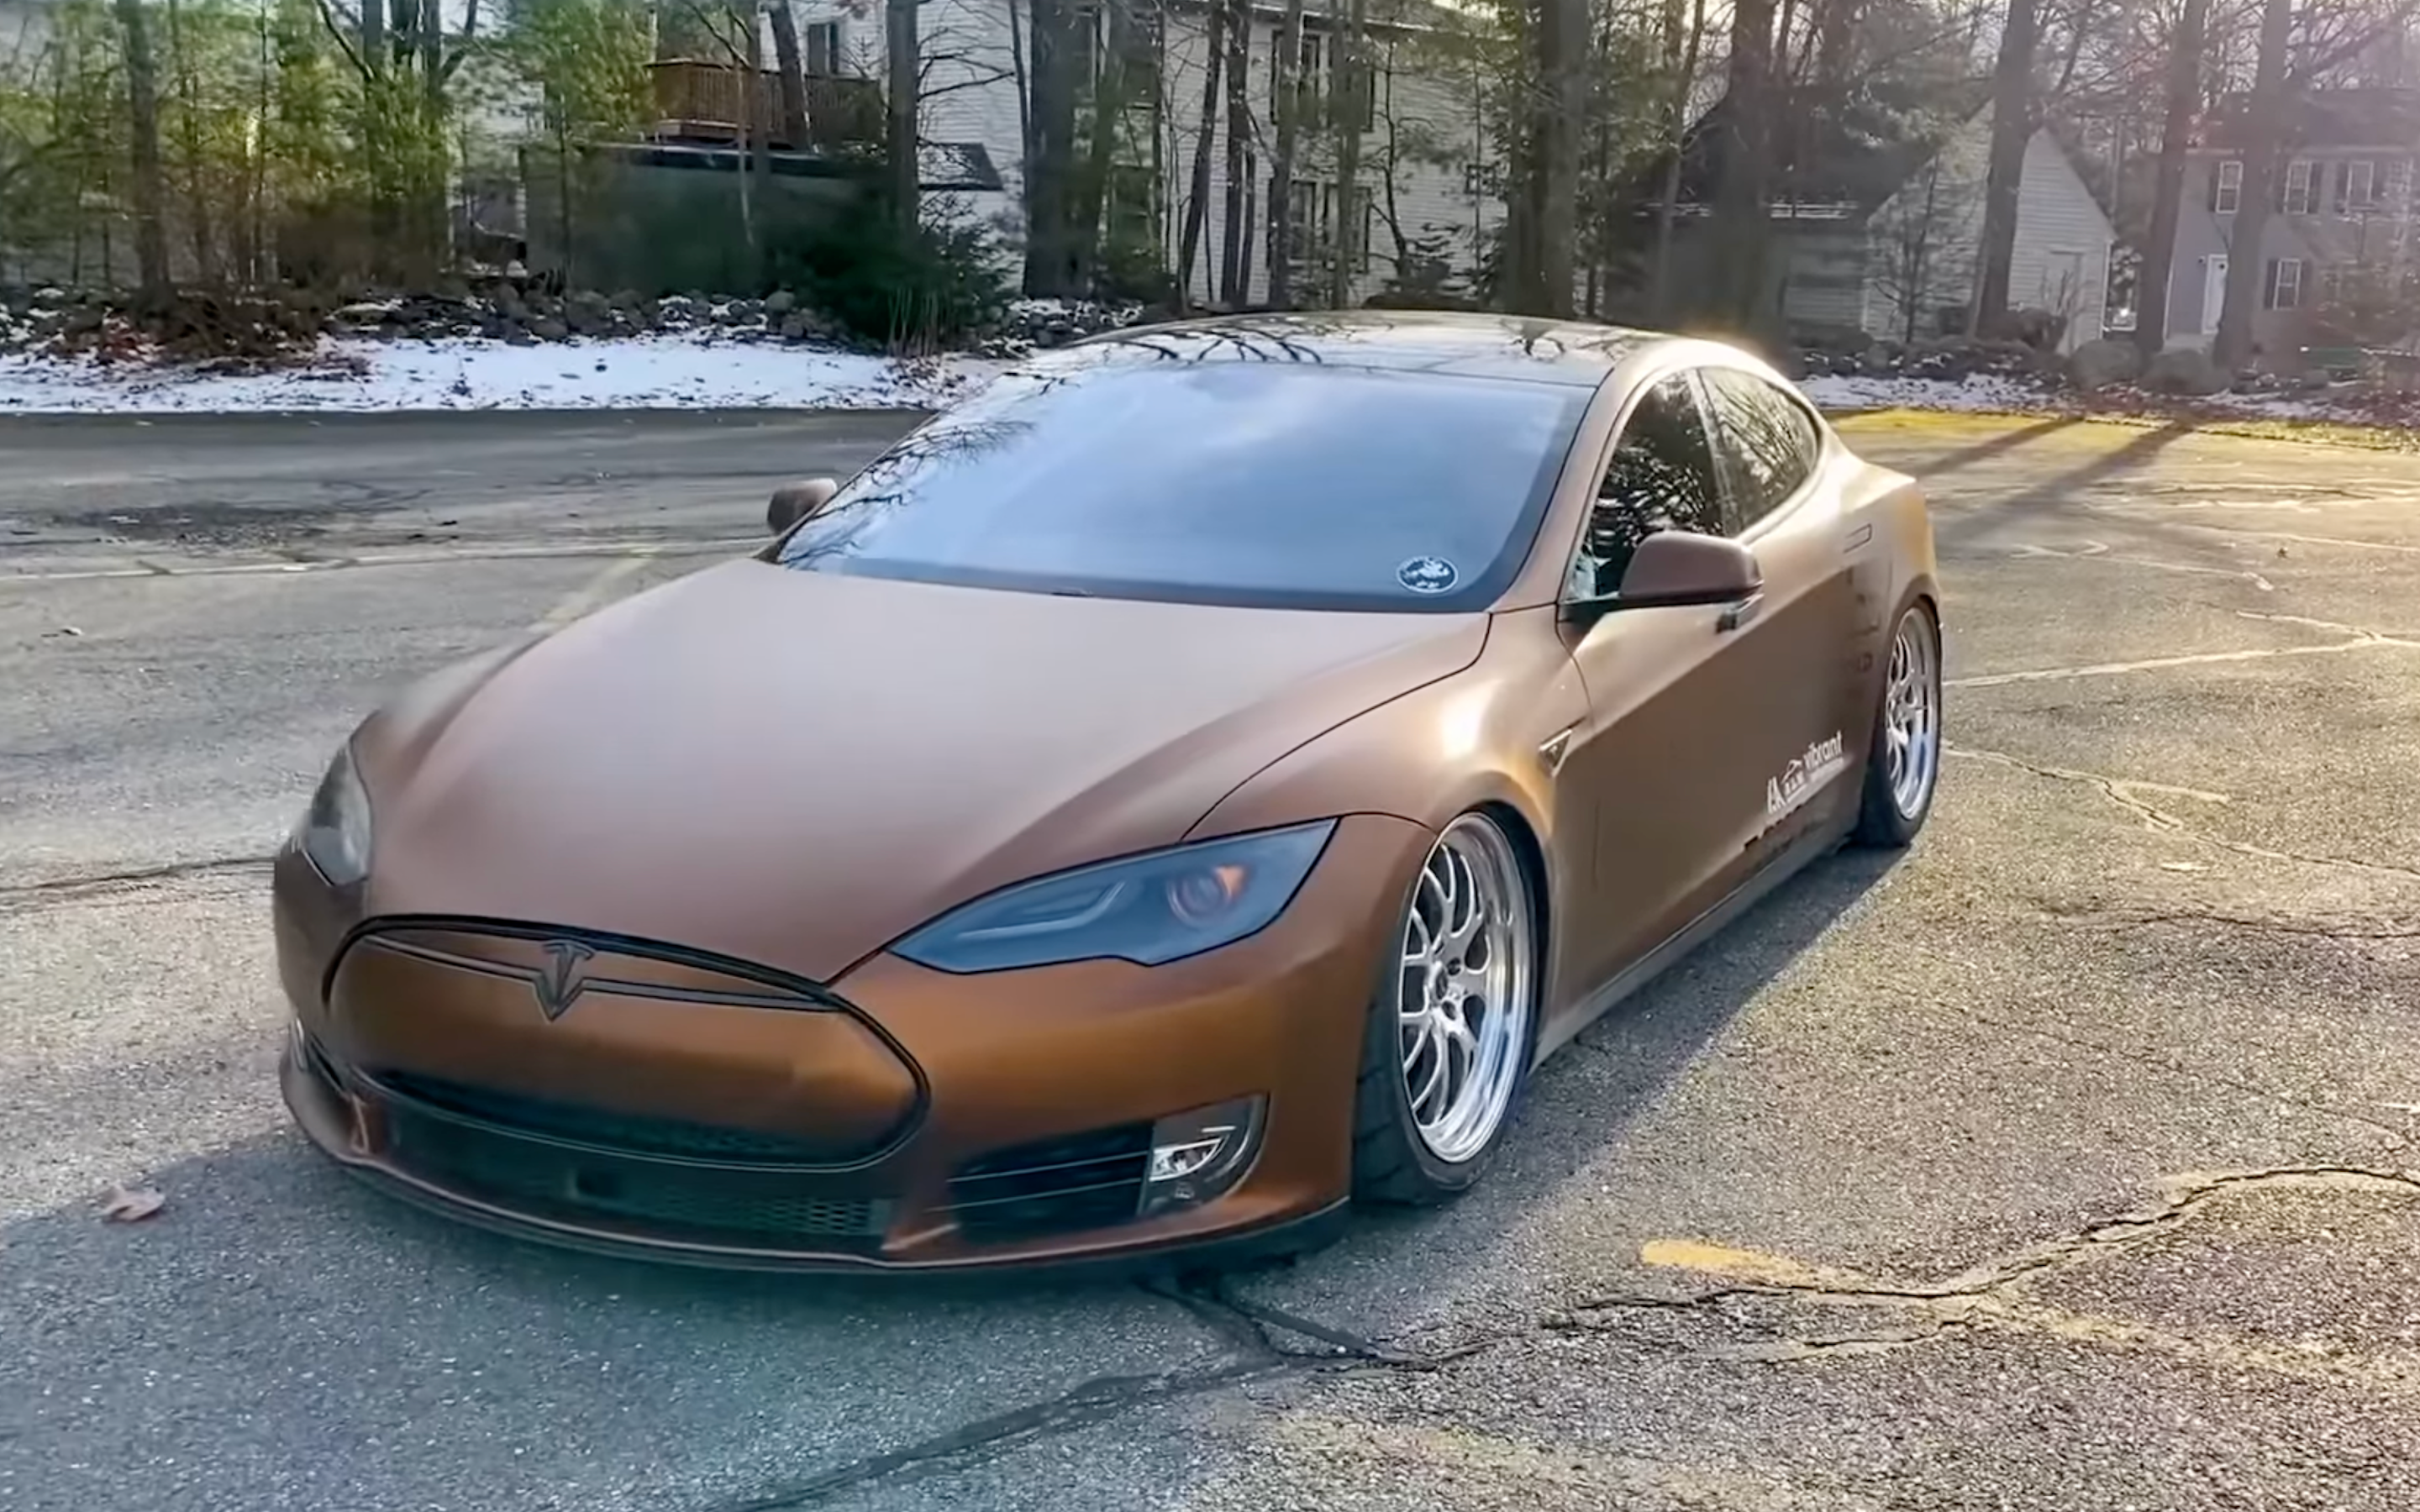 Le Tesla V8 marron de Rich Benoit avec suspension pneumatique